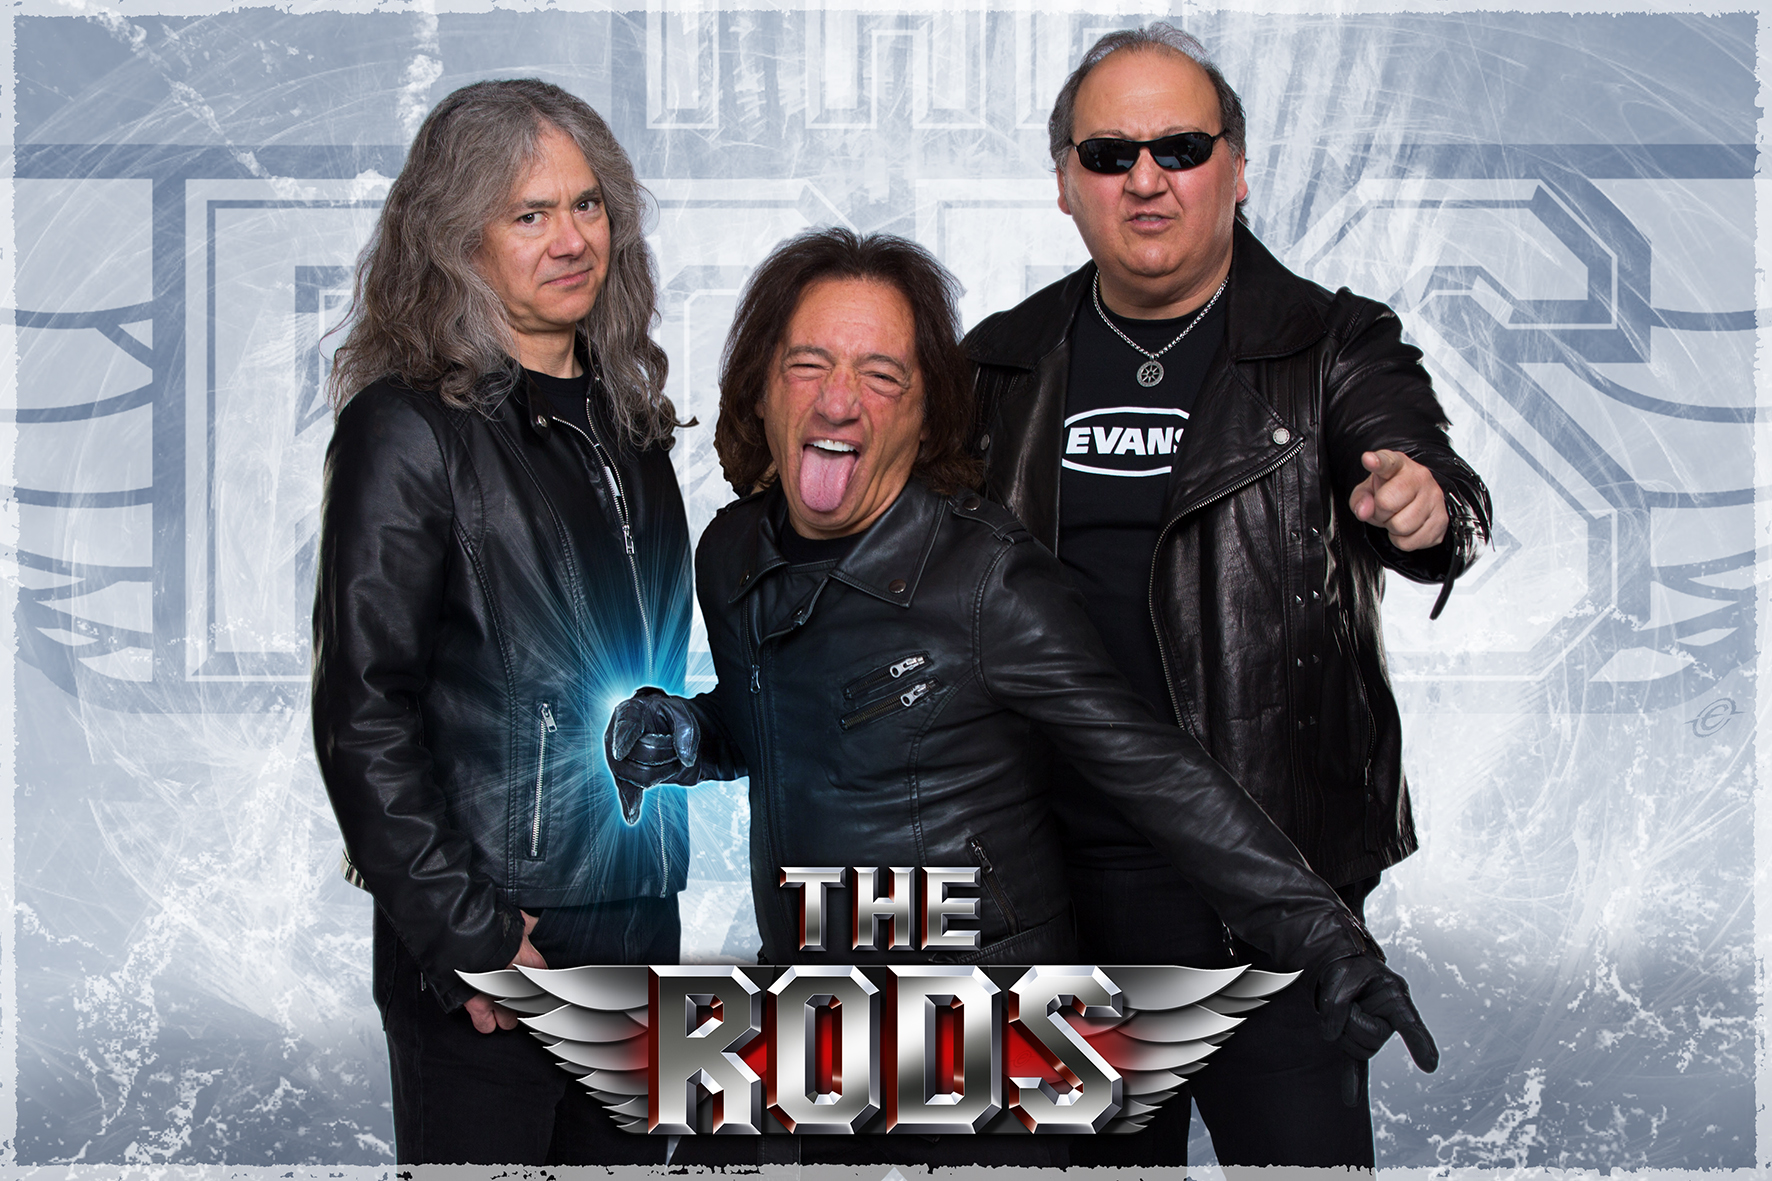 THE RODS – Legendäre US Metal Band unterschreibt weltweit bei Steamhammer/SPV – Neues Album erscheint Ende 2017